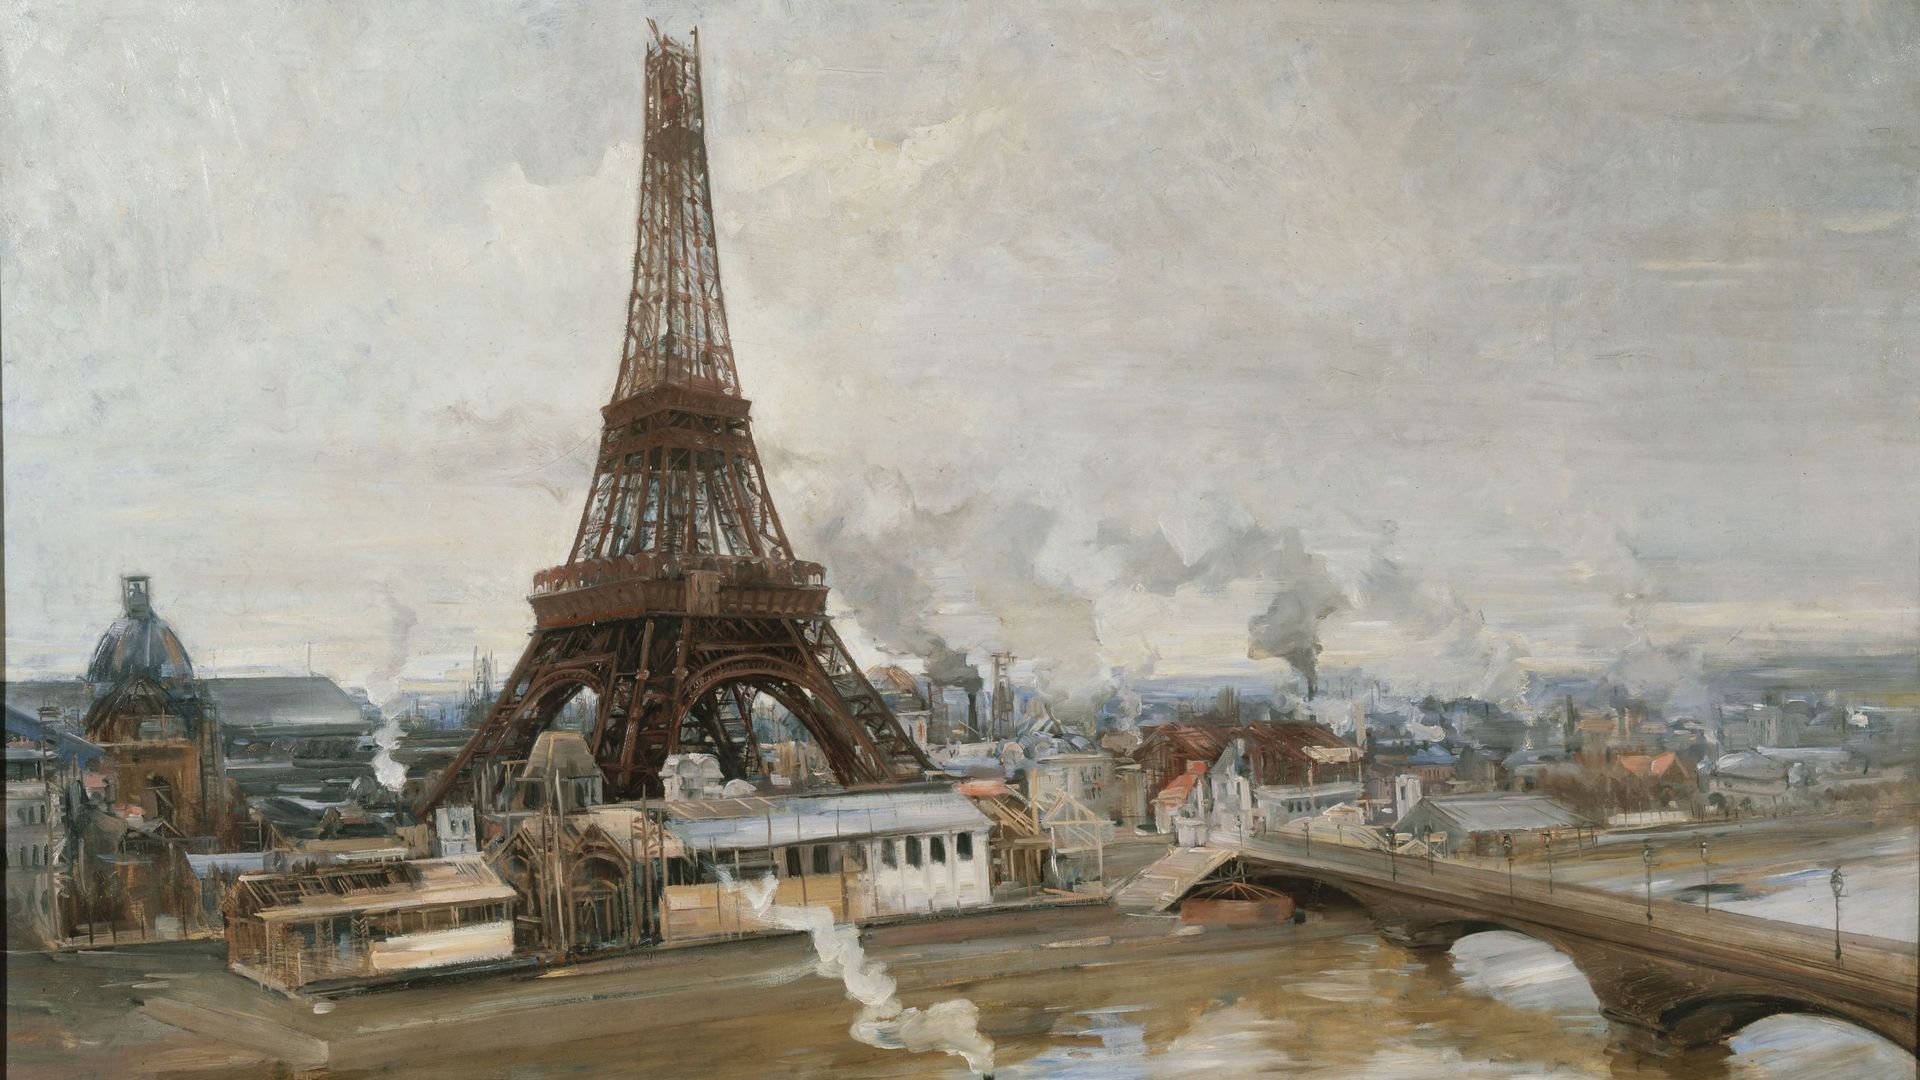 Fin de la construction, en 1889, par Paul-Louis Delance (musée Carnavalet, Paris)